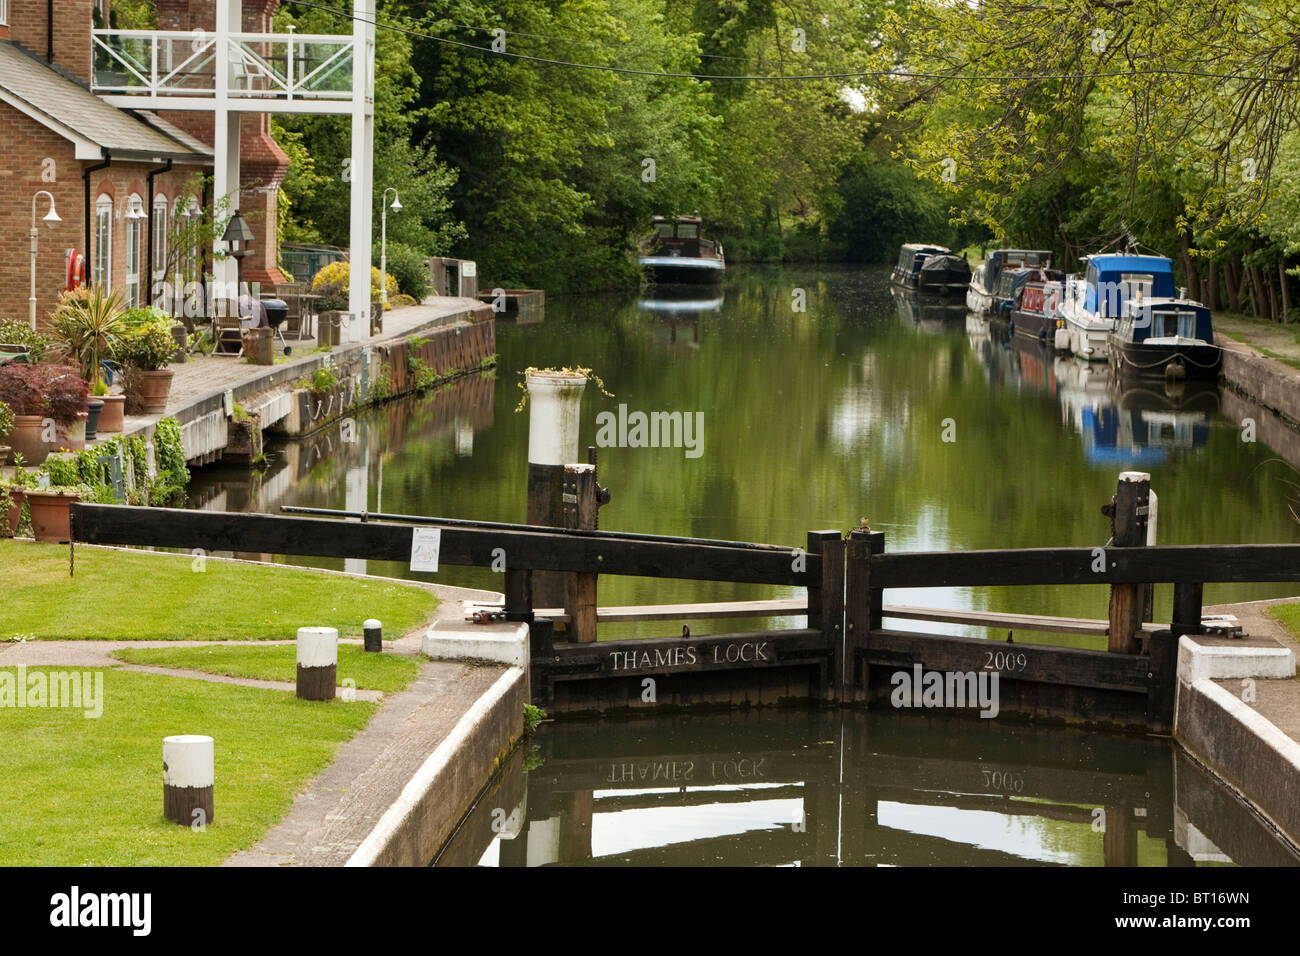 Thames Lock on the Wey Navigation Canal, Weybridge, Surrey, Uk Stock Photo